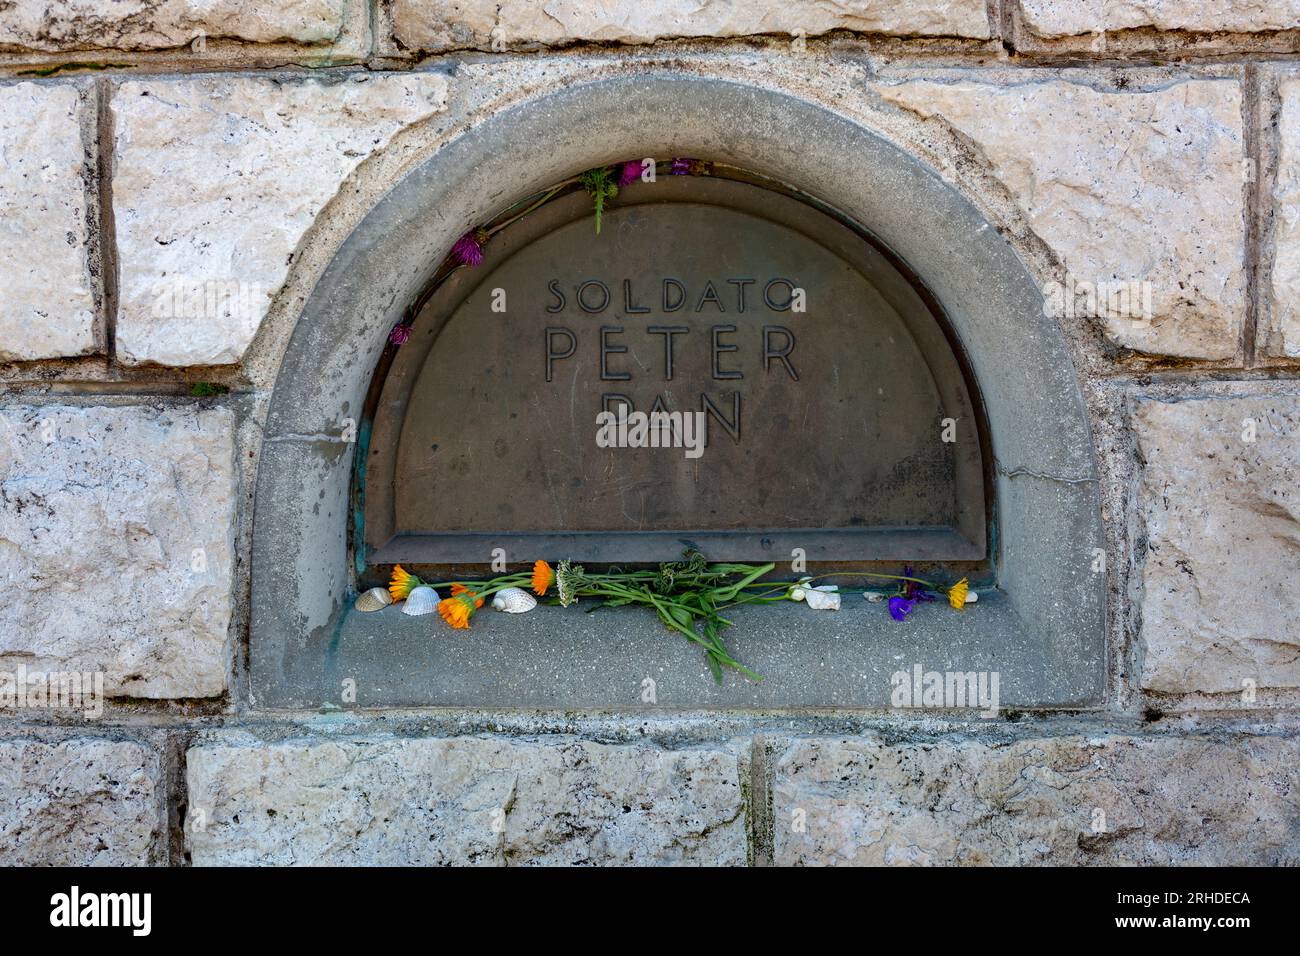 Peter Pan existierte wirklich. Er war ein ungarischer Soldat, der während des Ersten Weltkriegs auf dem Grappa starb und heute in der Gedenkstätte begraben ist. Stockfoto